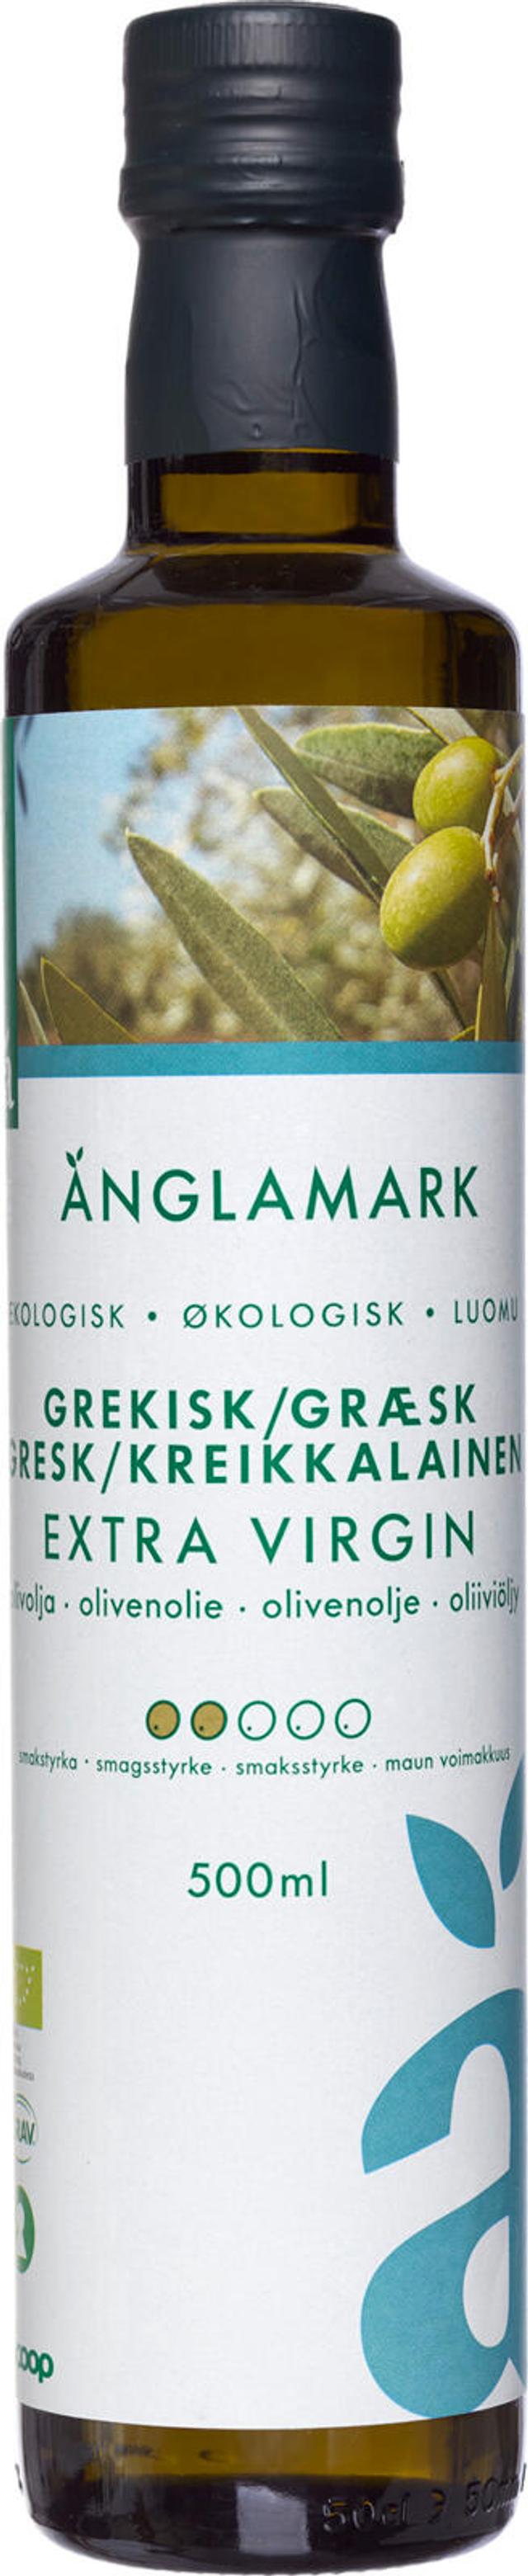 Änglamark ekstra-neitsytoliiviöljy kreikkalainen luomu 500 ml